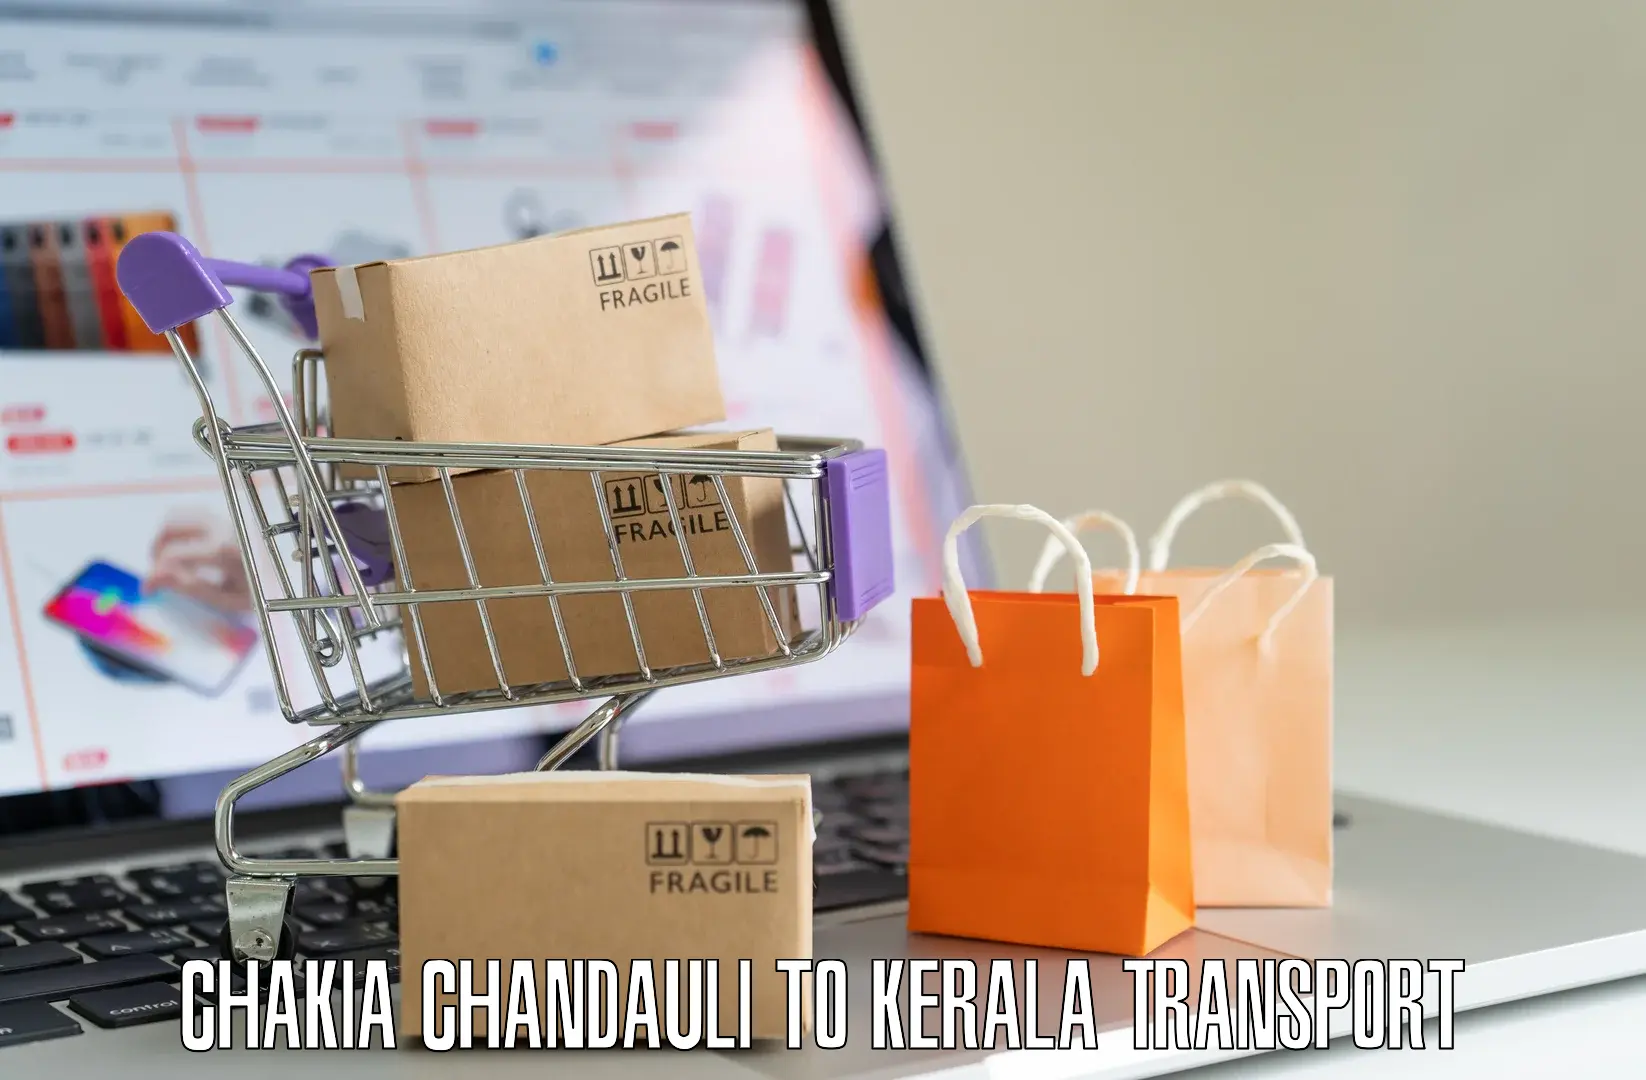 Pick up transport service Chakia Chandauli to Pandikkad